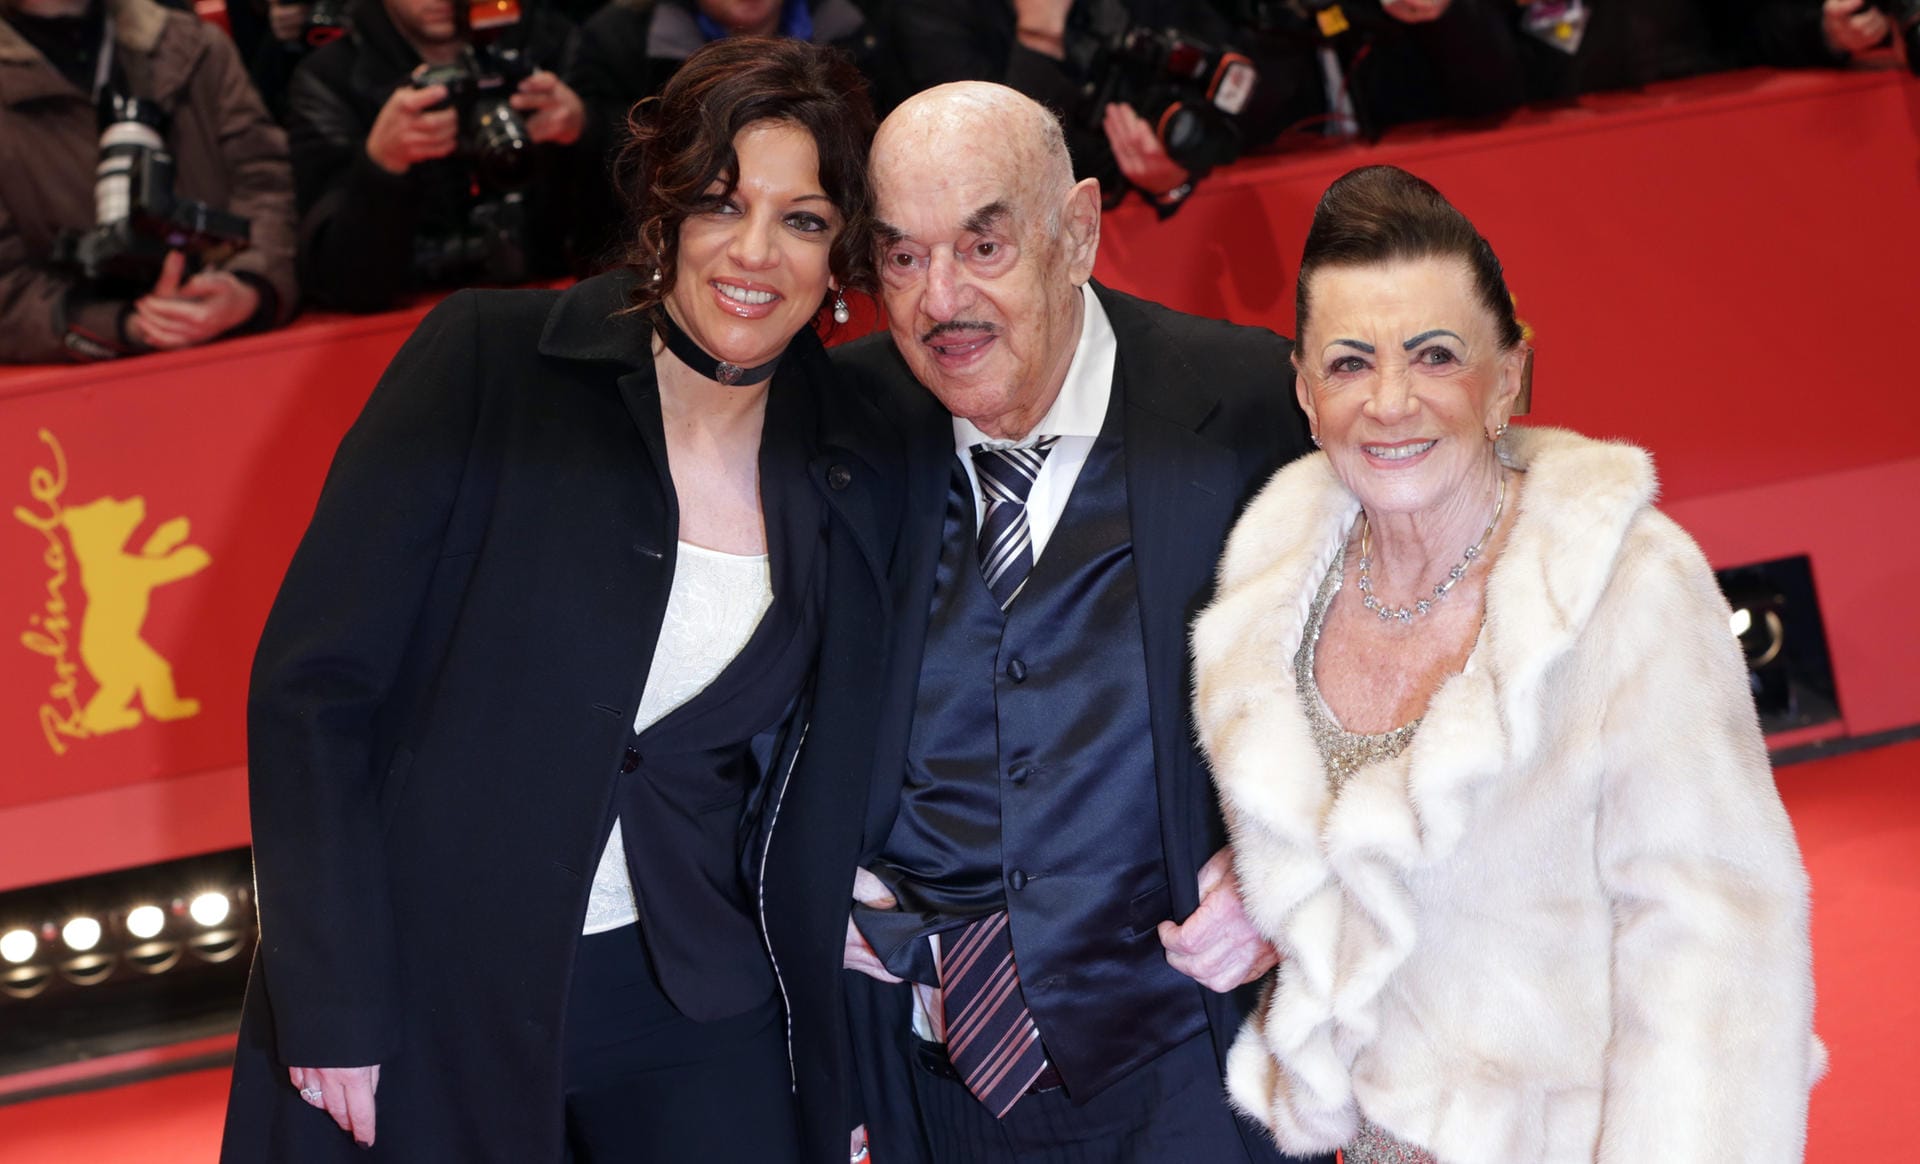 Februar 2014: Der Kino-Held kommt mit Tochter Alice und seiner mittlerweile verstorbenen Ehefrau Maria zur 64. Berlinale. 1947 heirateten die beiden und haben vier gemeinsame Kinder.